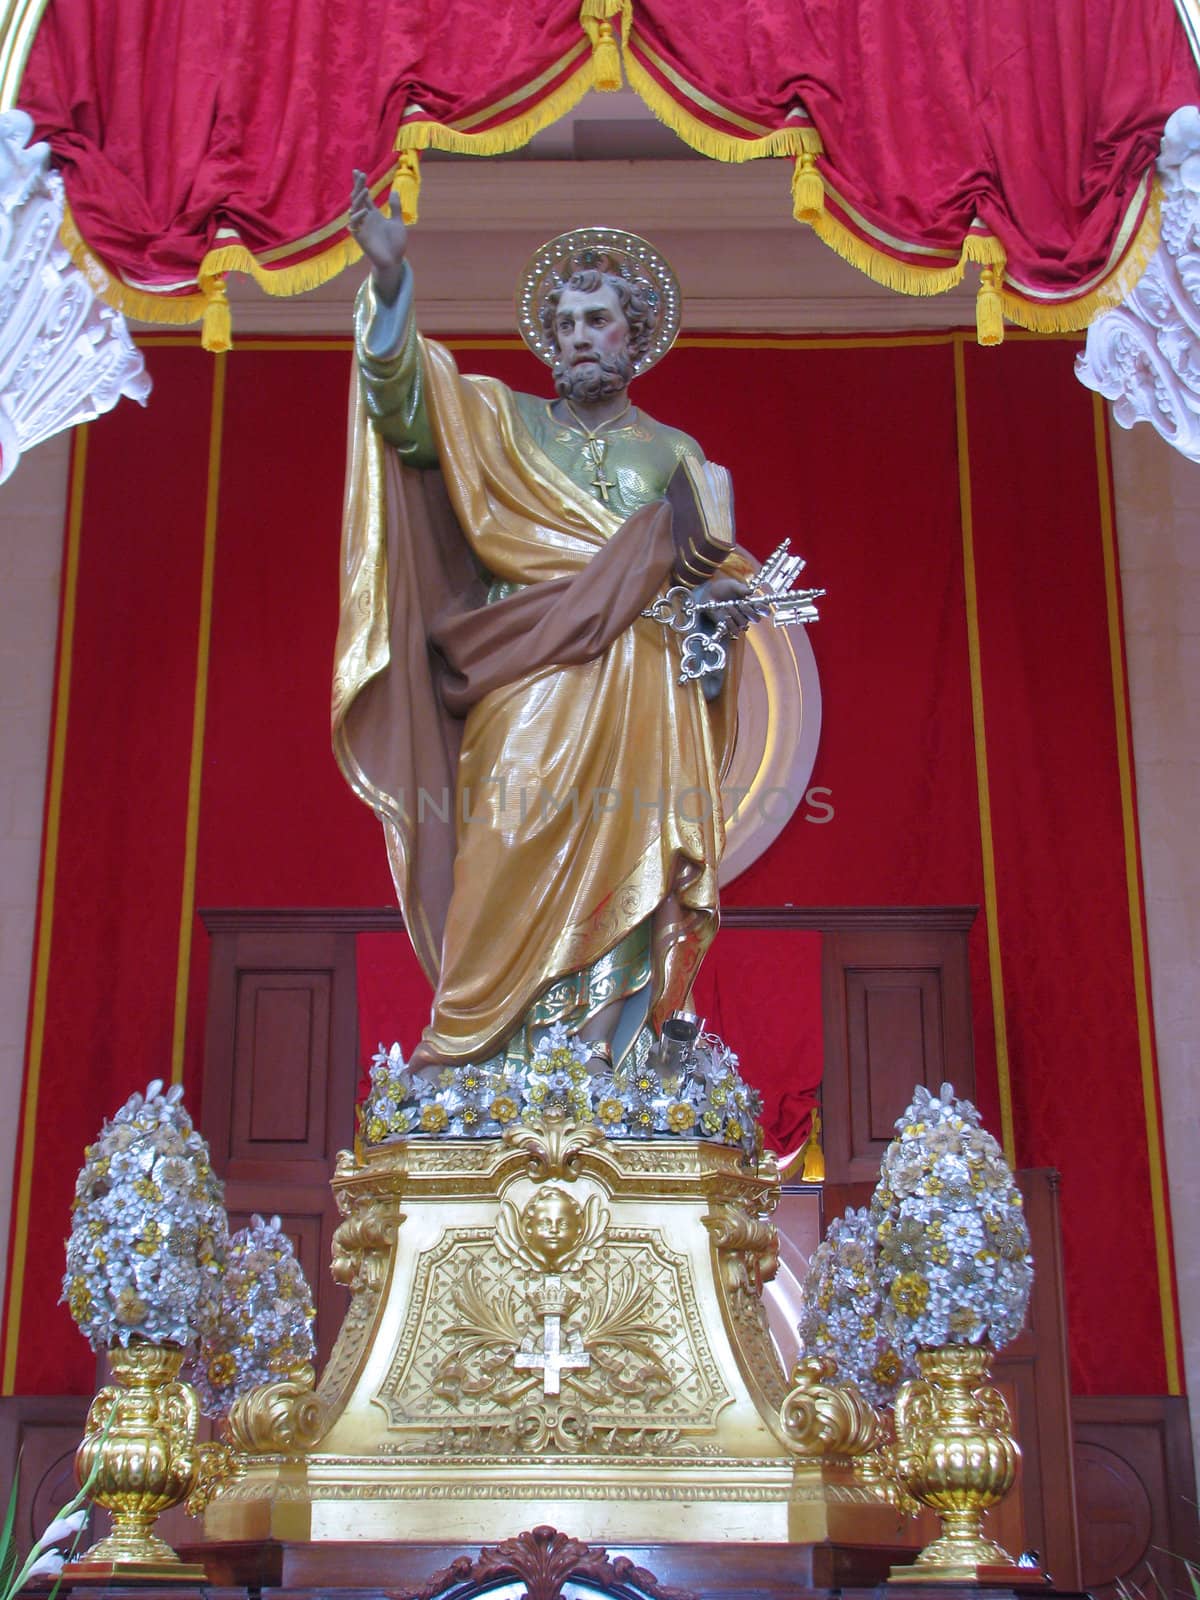 Saint Peter by fajjenzu